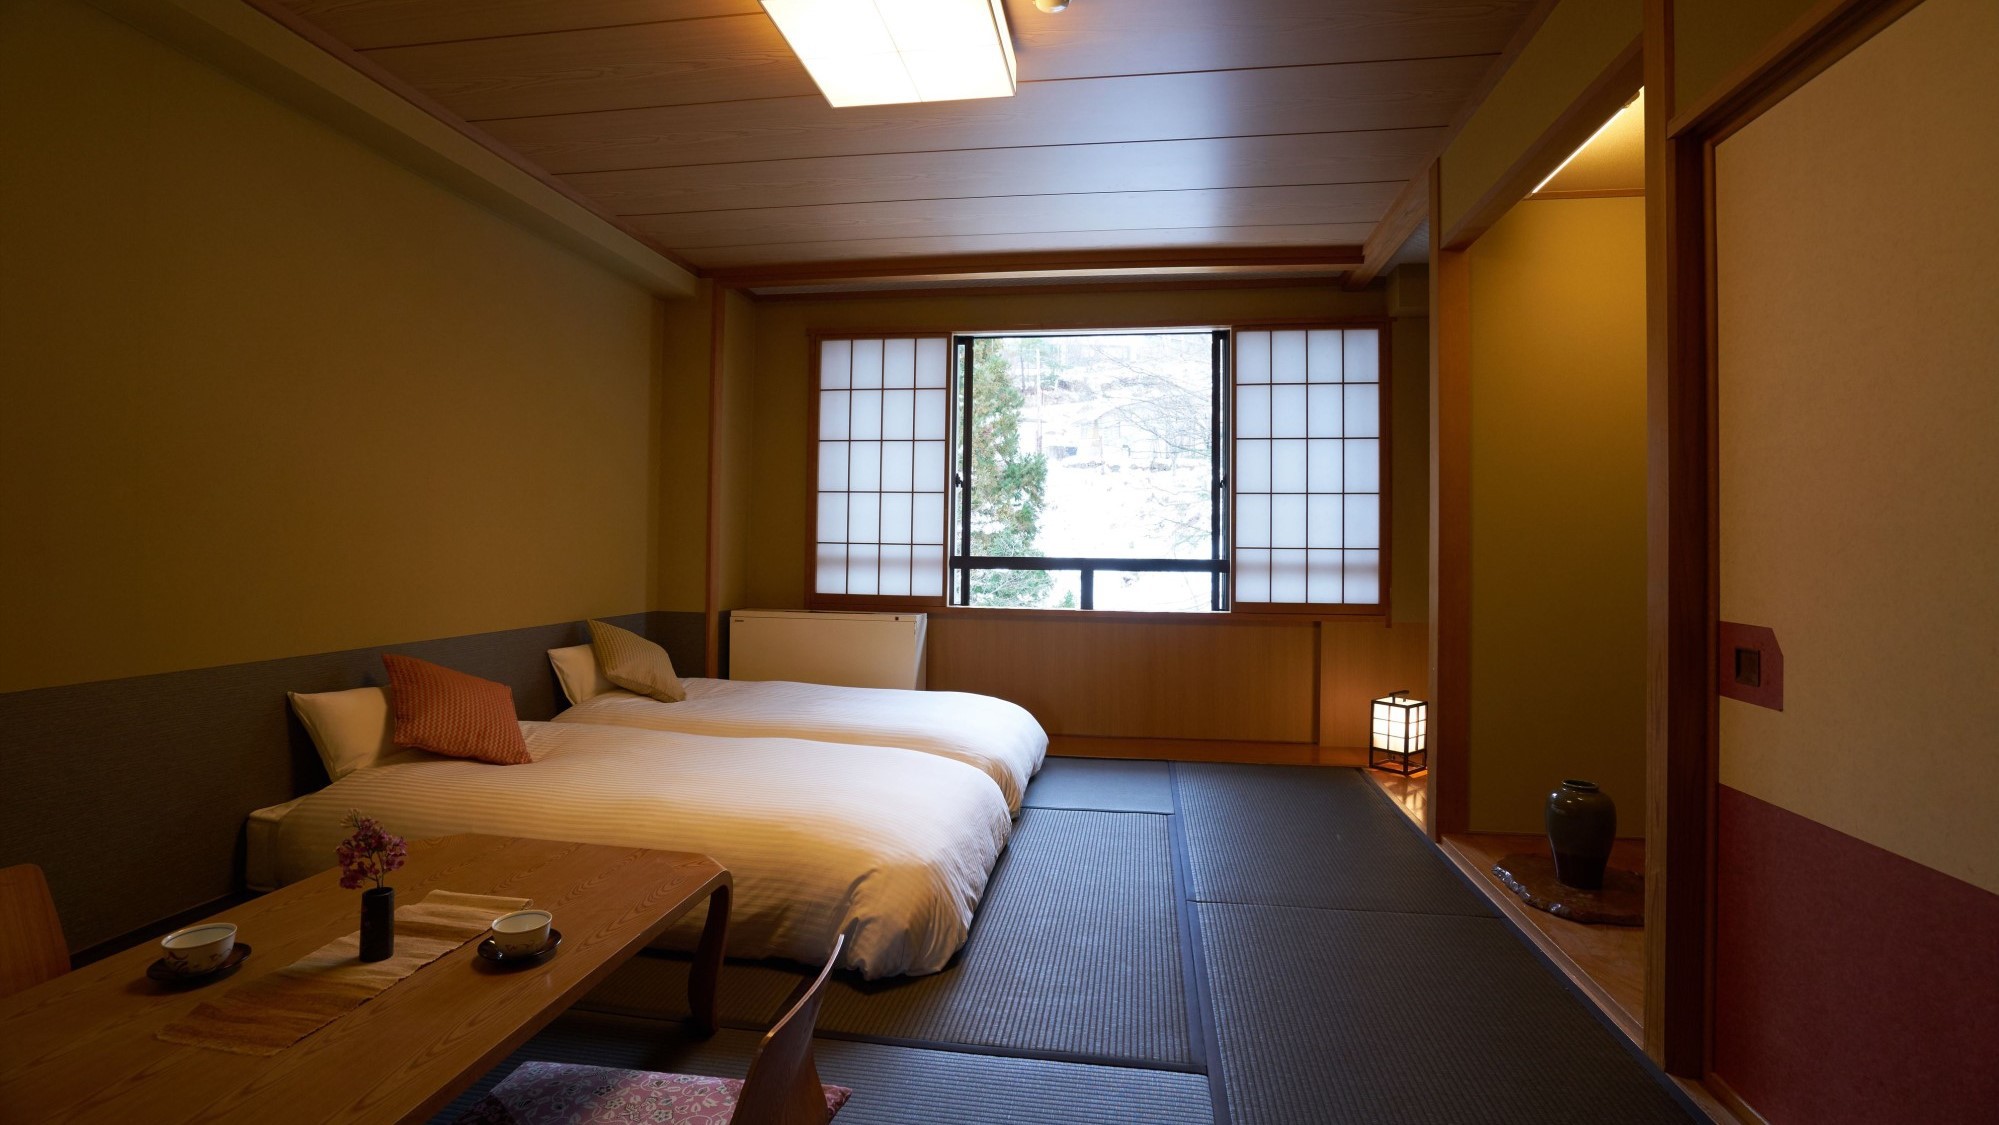 【倶楽部ルーム】和室にローベッドを2台配した空間。客室は全室禁煙、蔵王の澄んだ空気を楽しんで